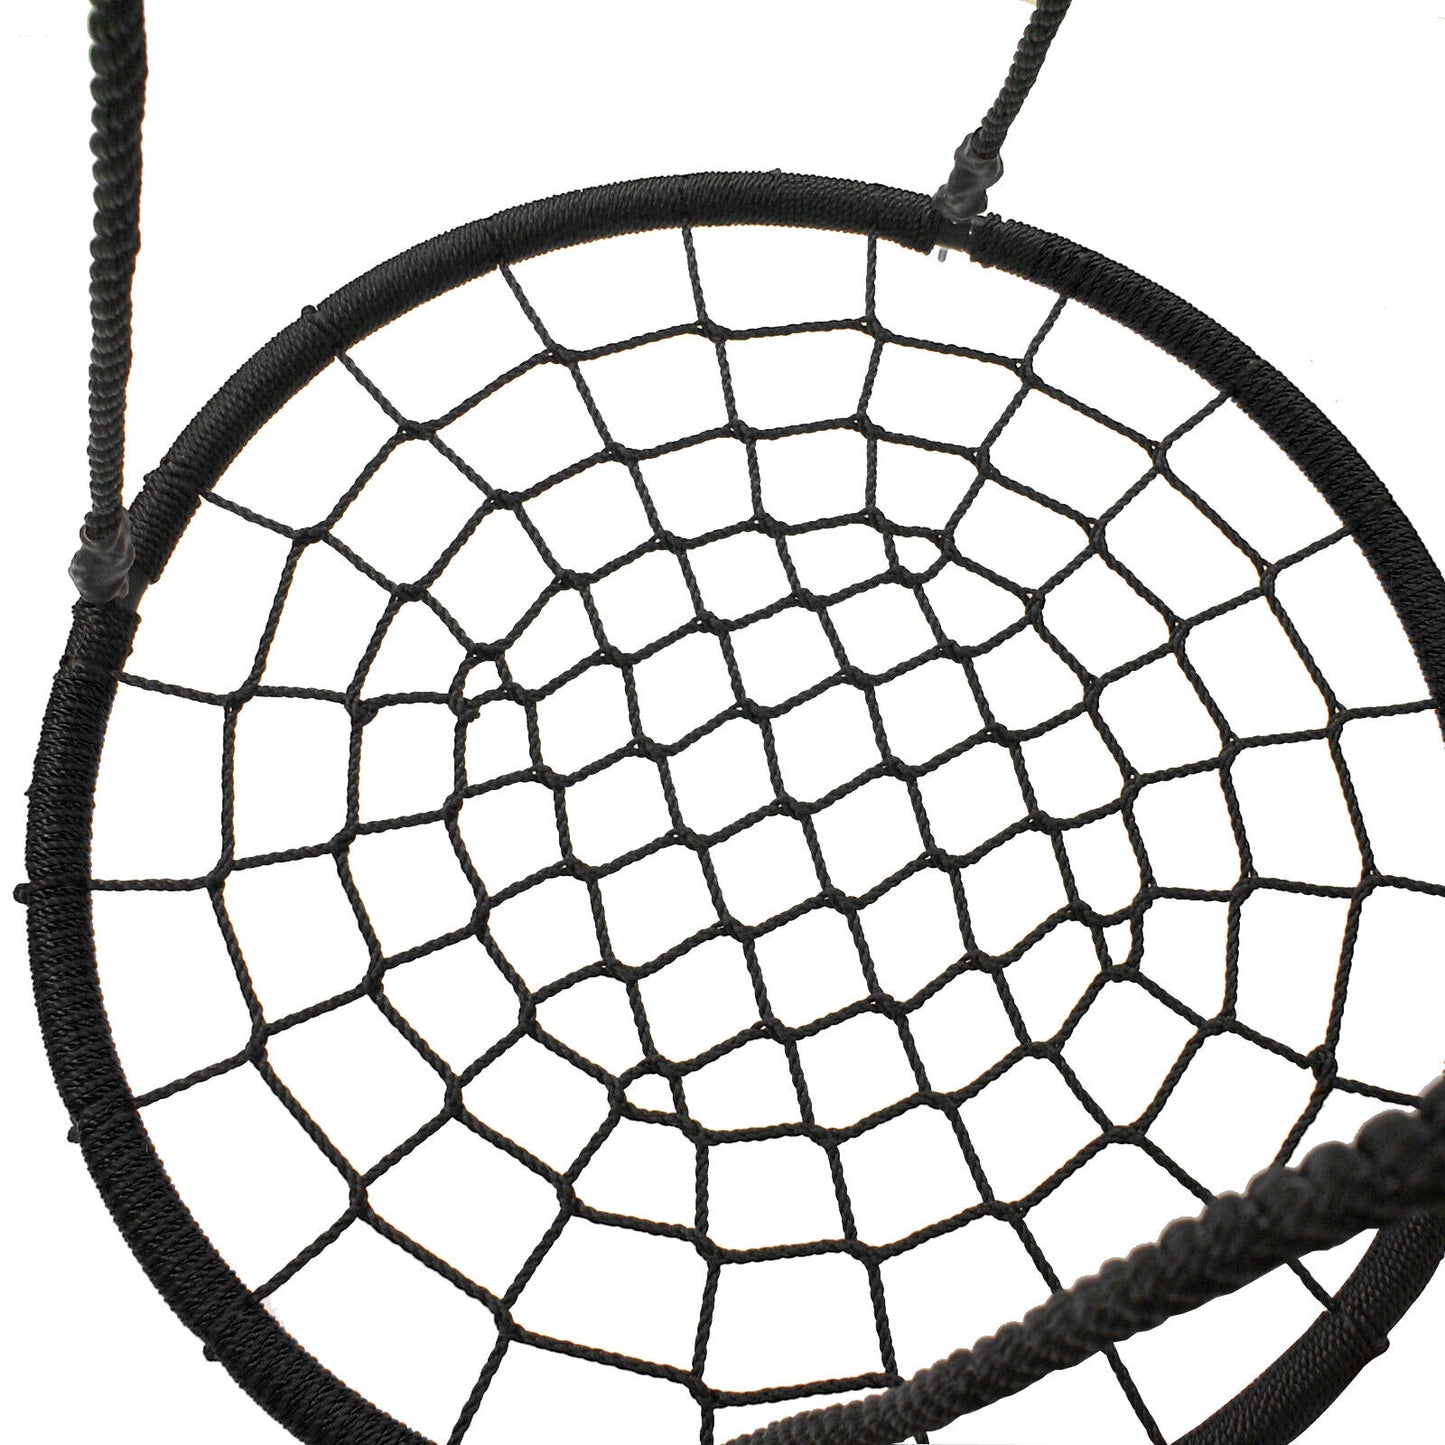 48" Spider Web Swing Set Large Platform Net Adjustable Hanging Ropes for Kids